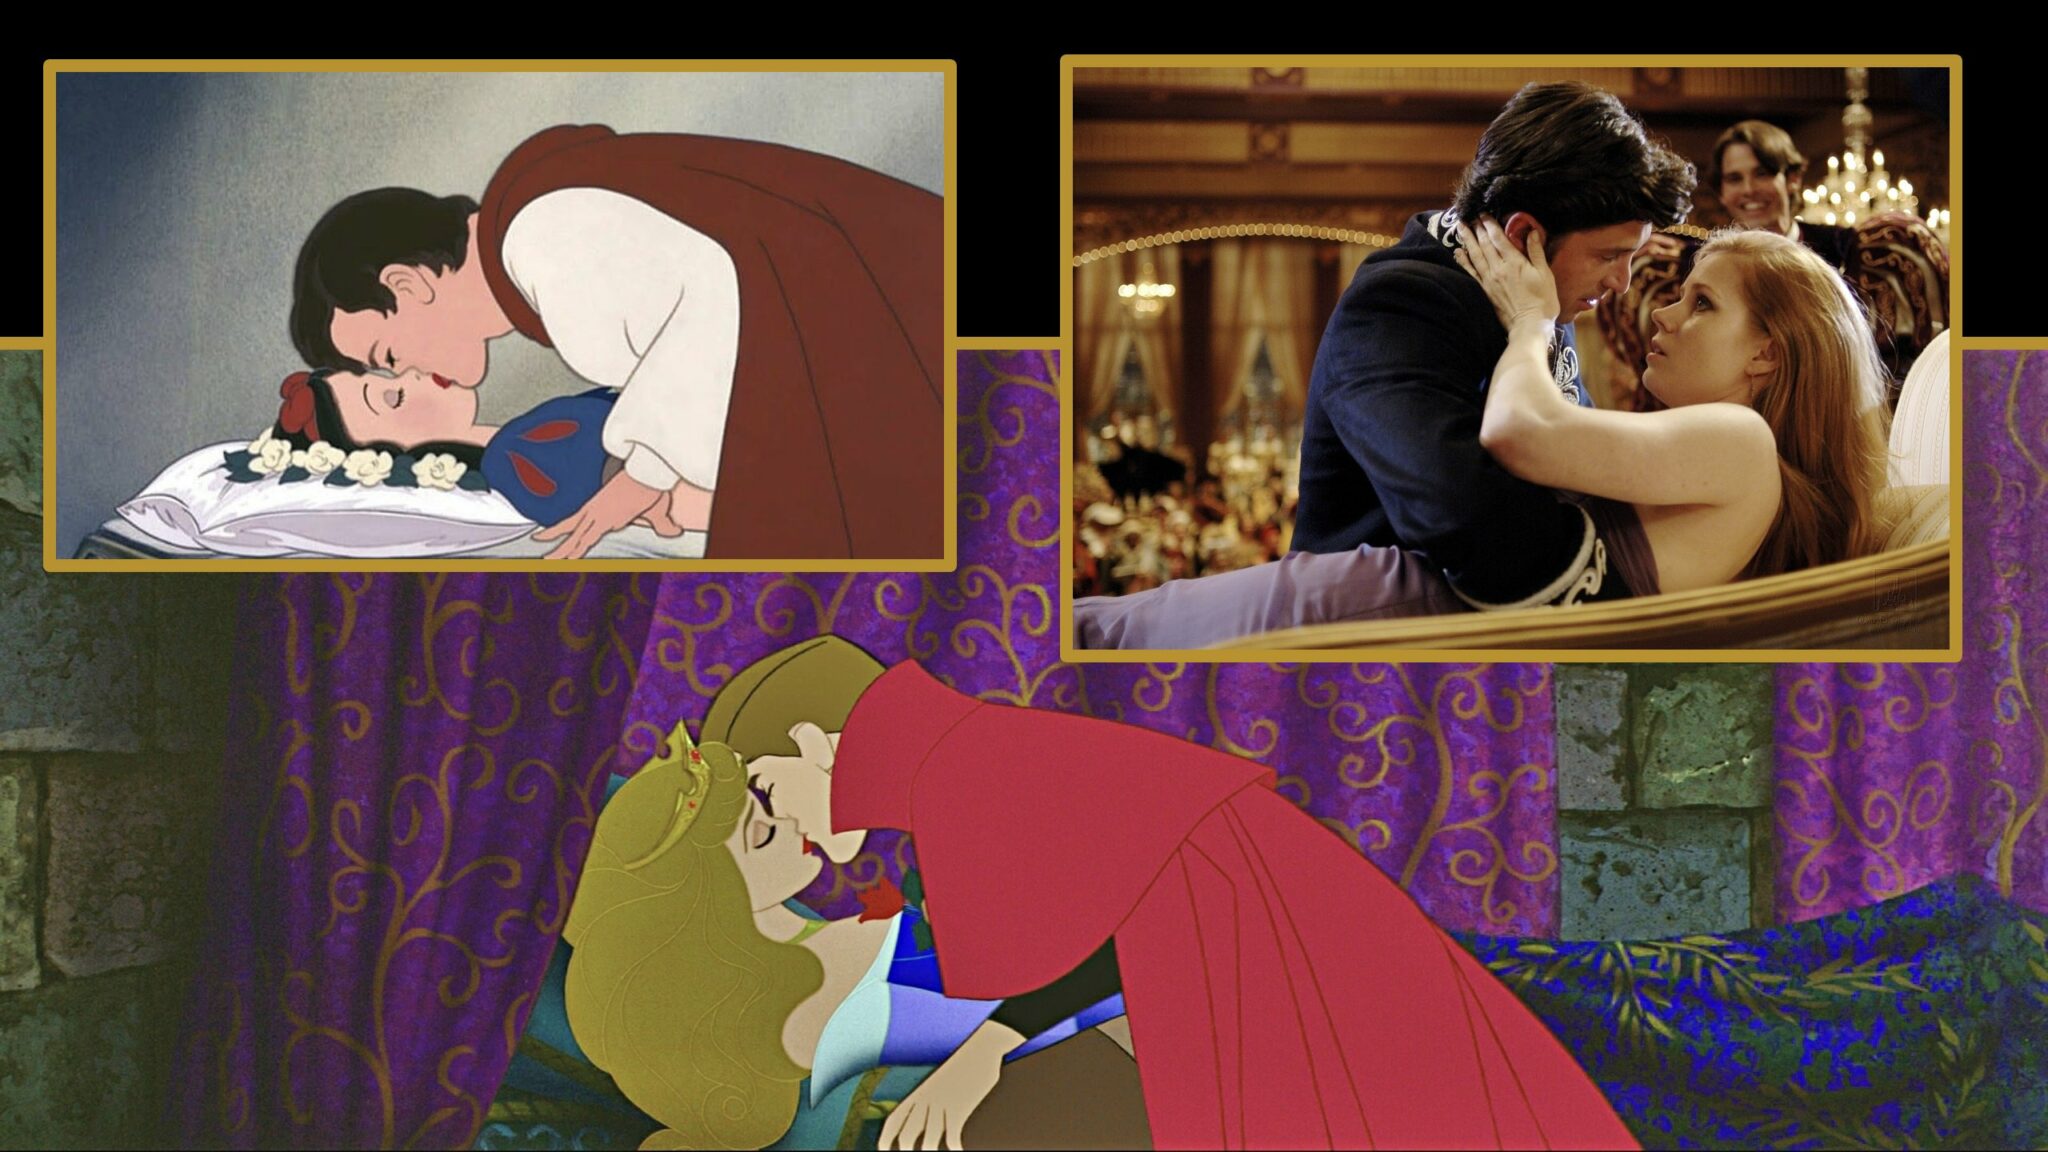 Blanche-Neige, Aurore et Giselle sont embrassés par leur prince.